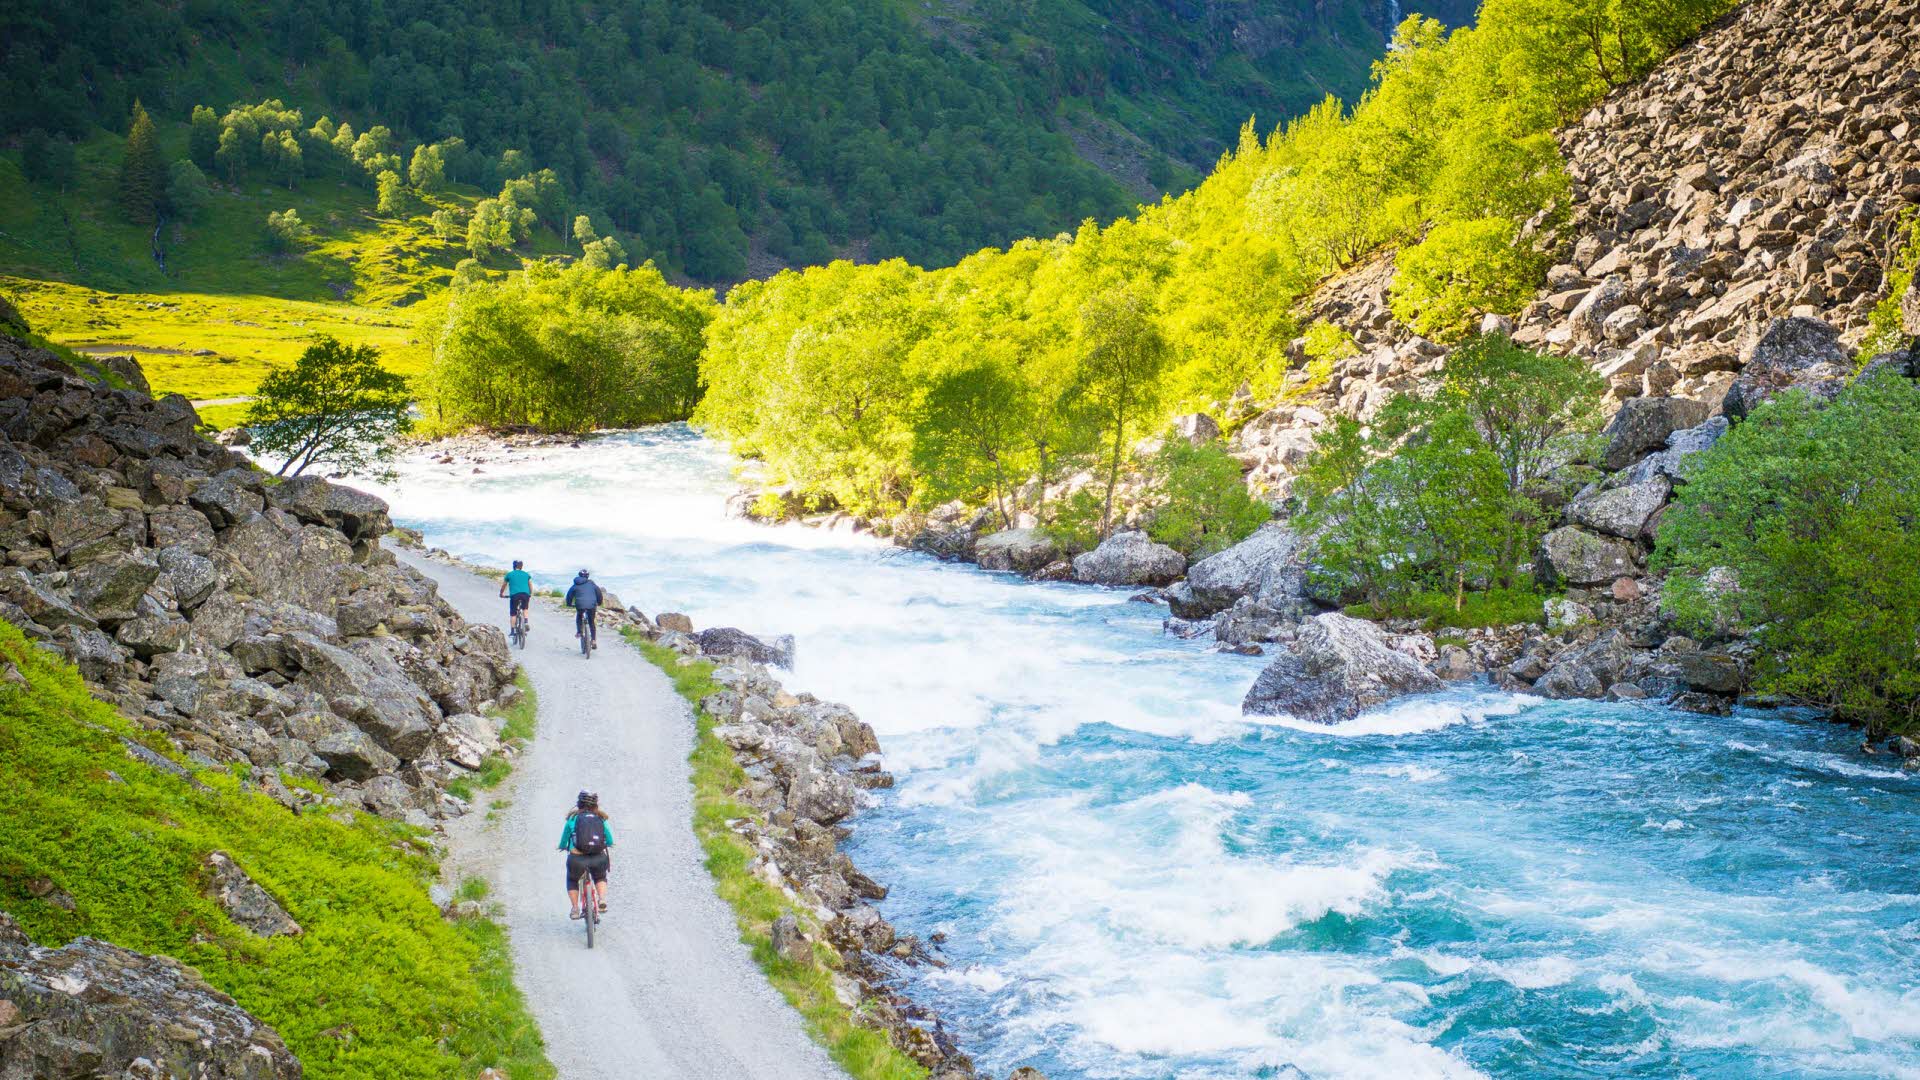 Trois personnes descendant à vélo la route de gravier de la vallée de Flam près de la rivière verte et des flancs de montagne luxuriants pendant le bel été norvégien